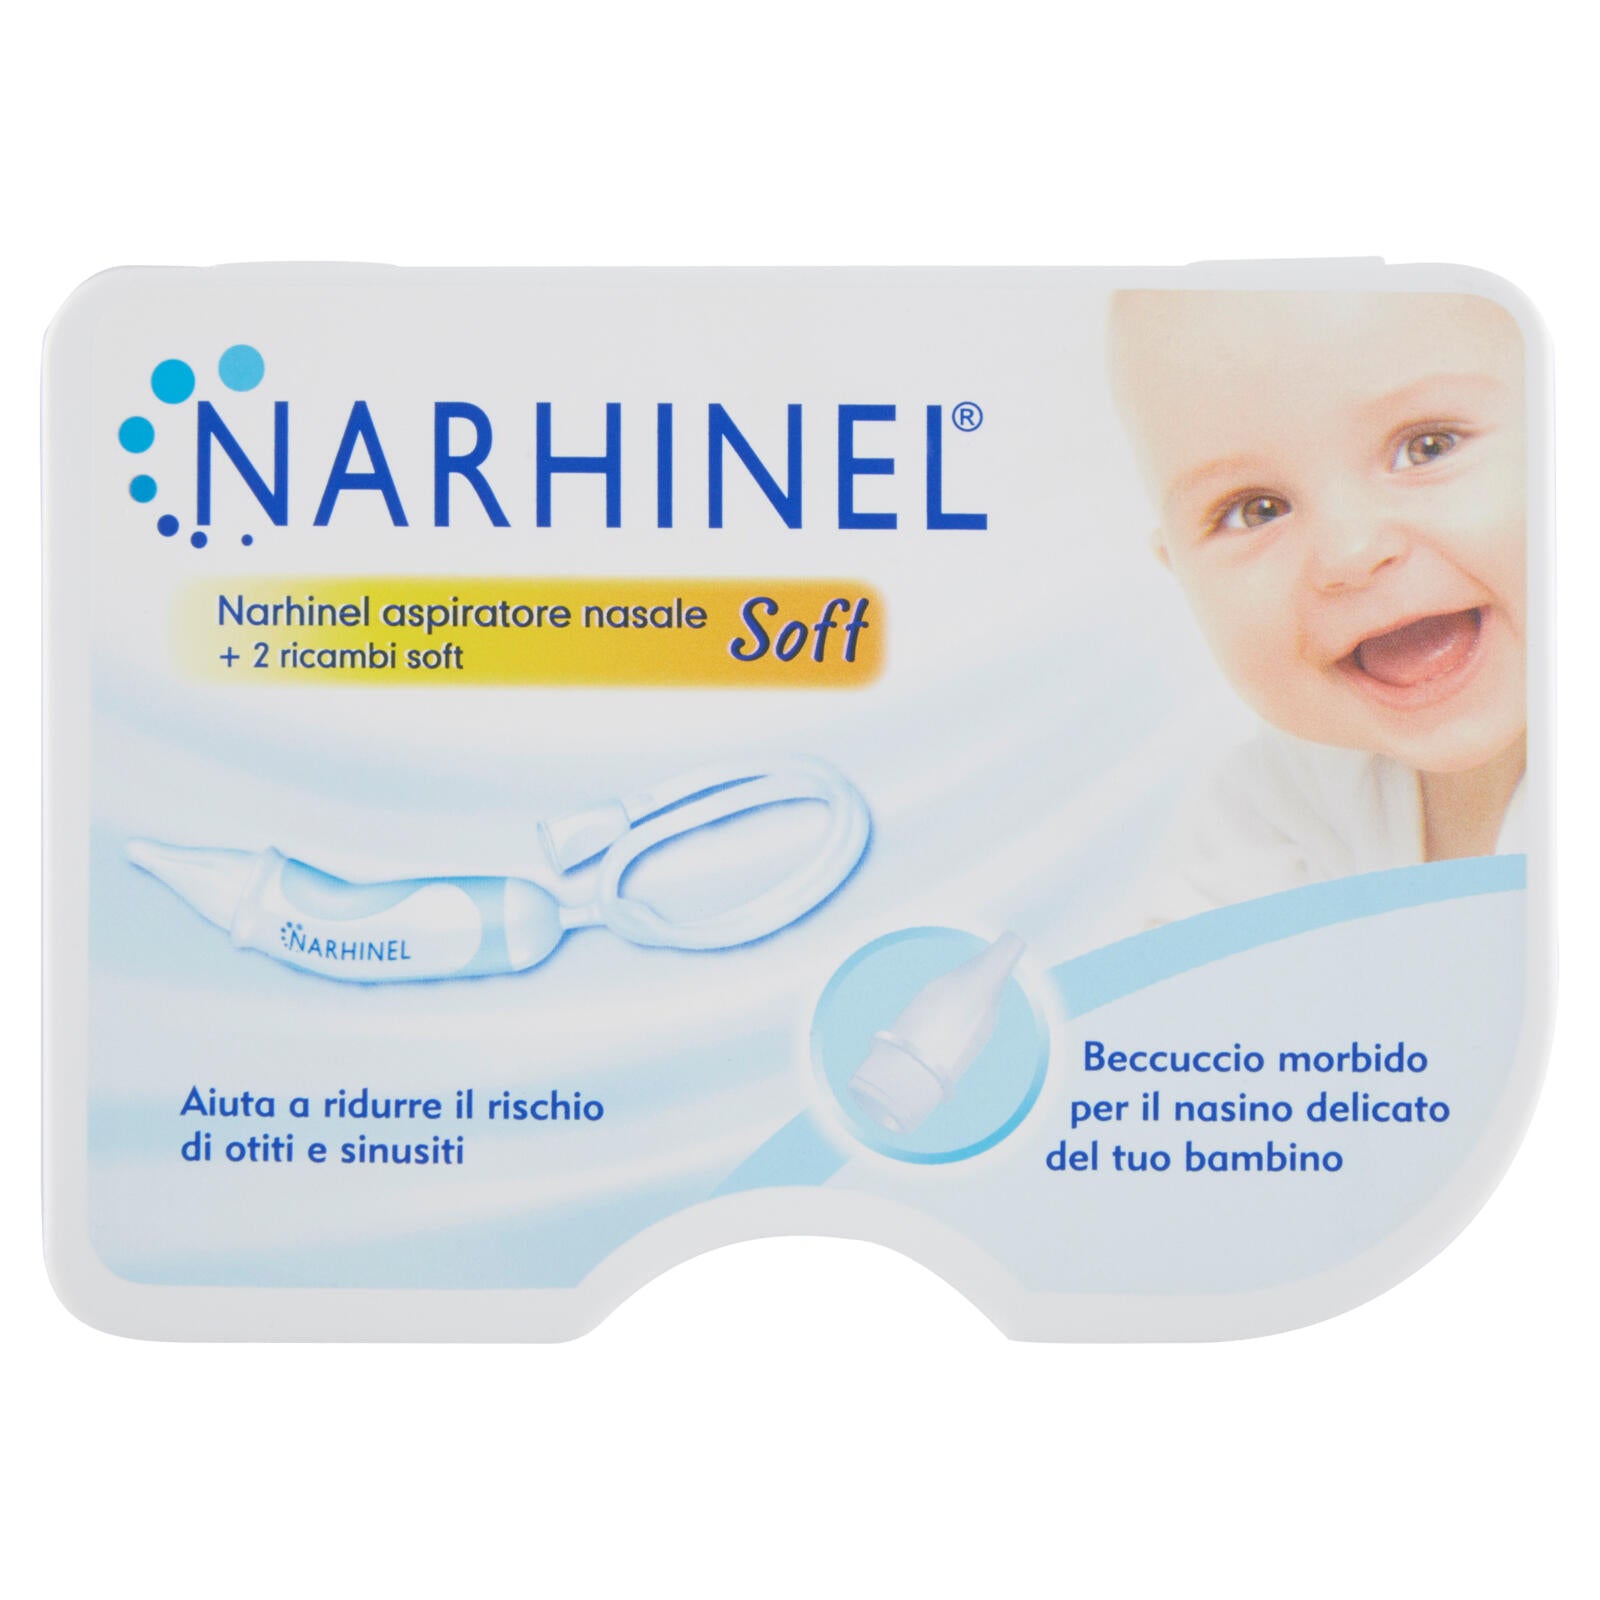 Narhinel aspiratore nasale per neonati e bambini utile a rimuove secrezioni  nasali + 2 ricambi soft ->